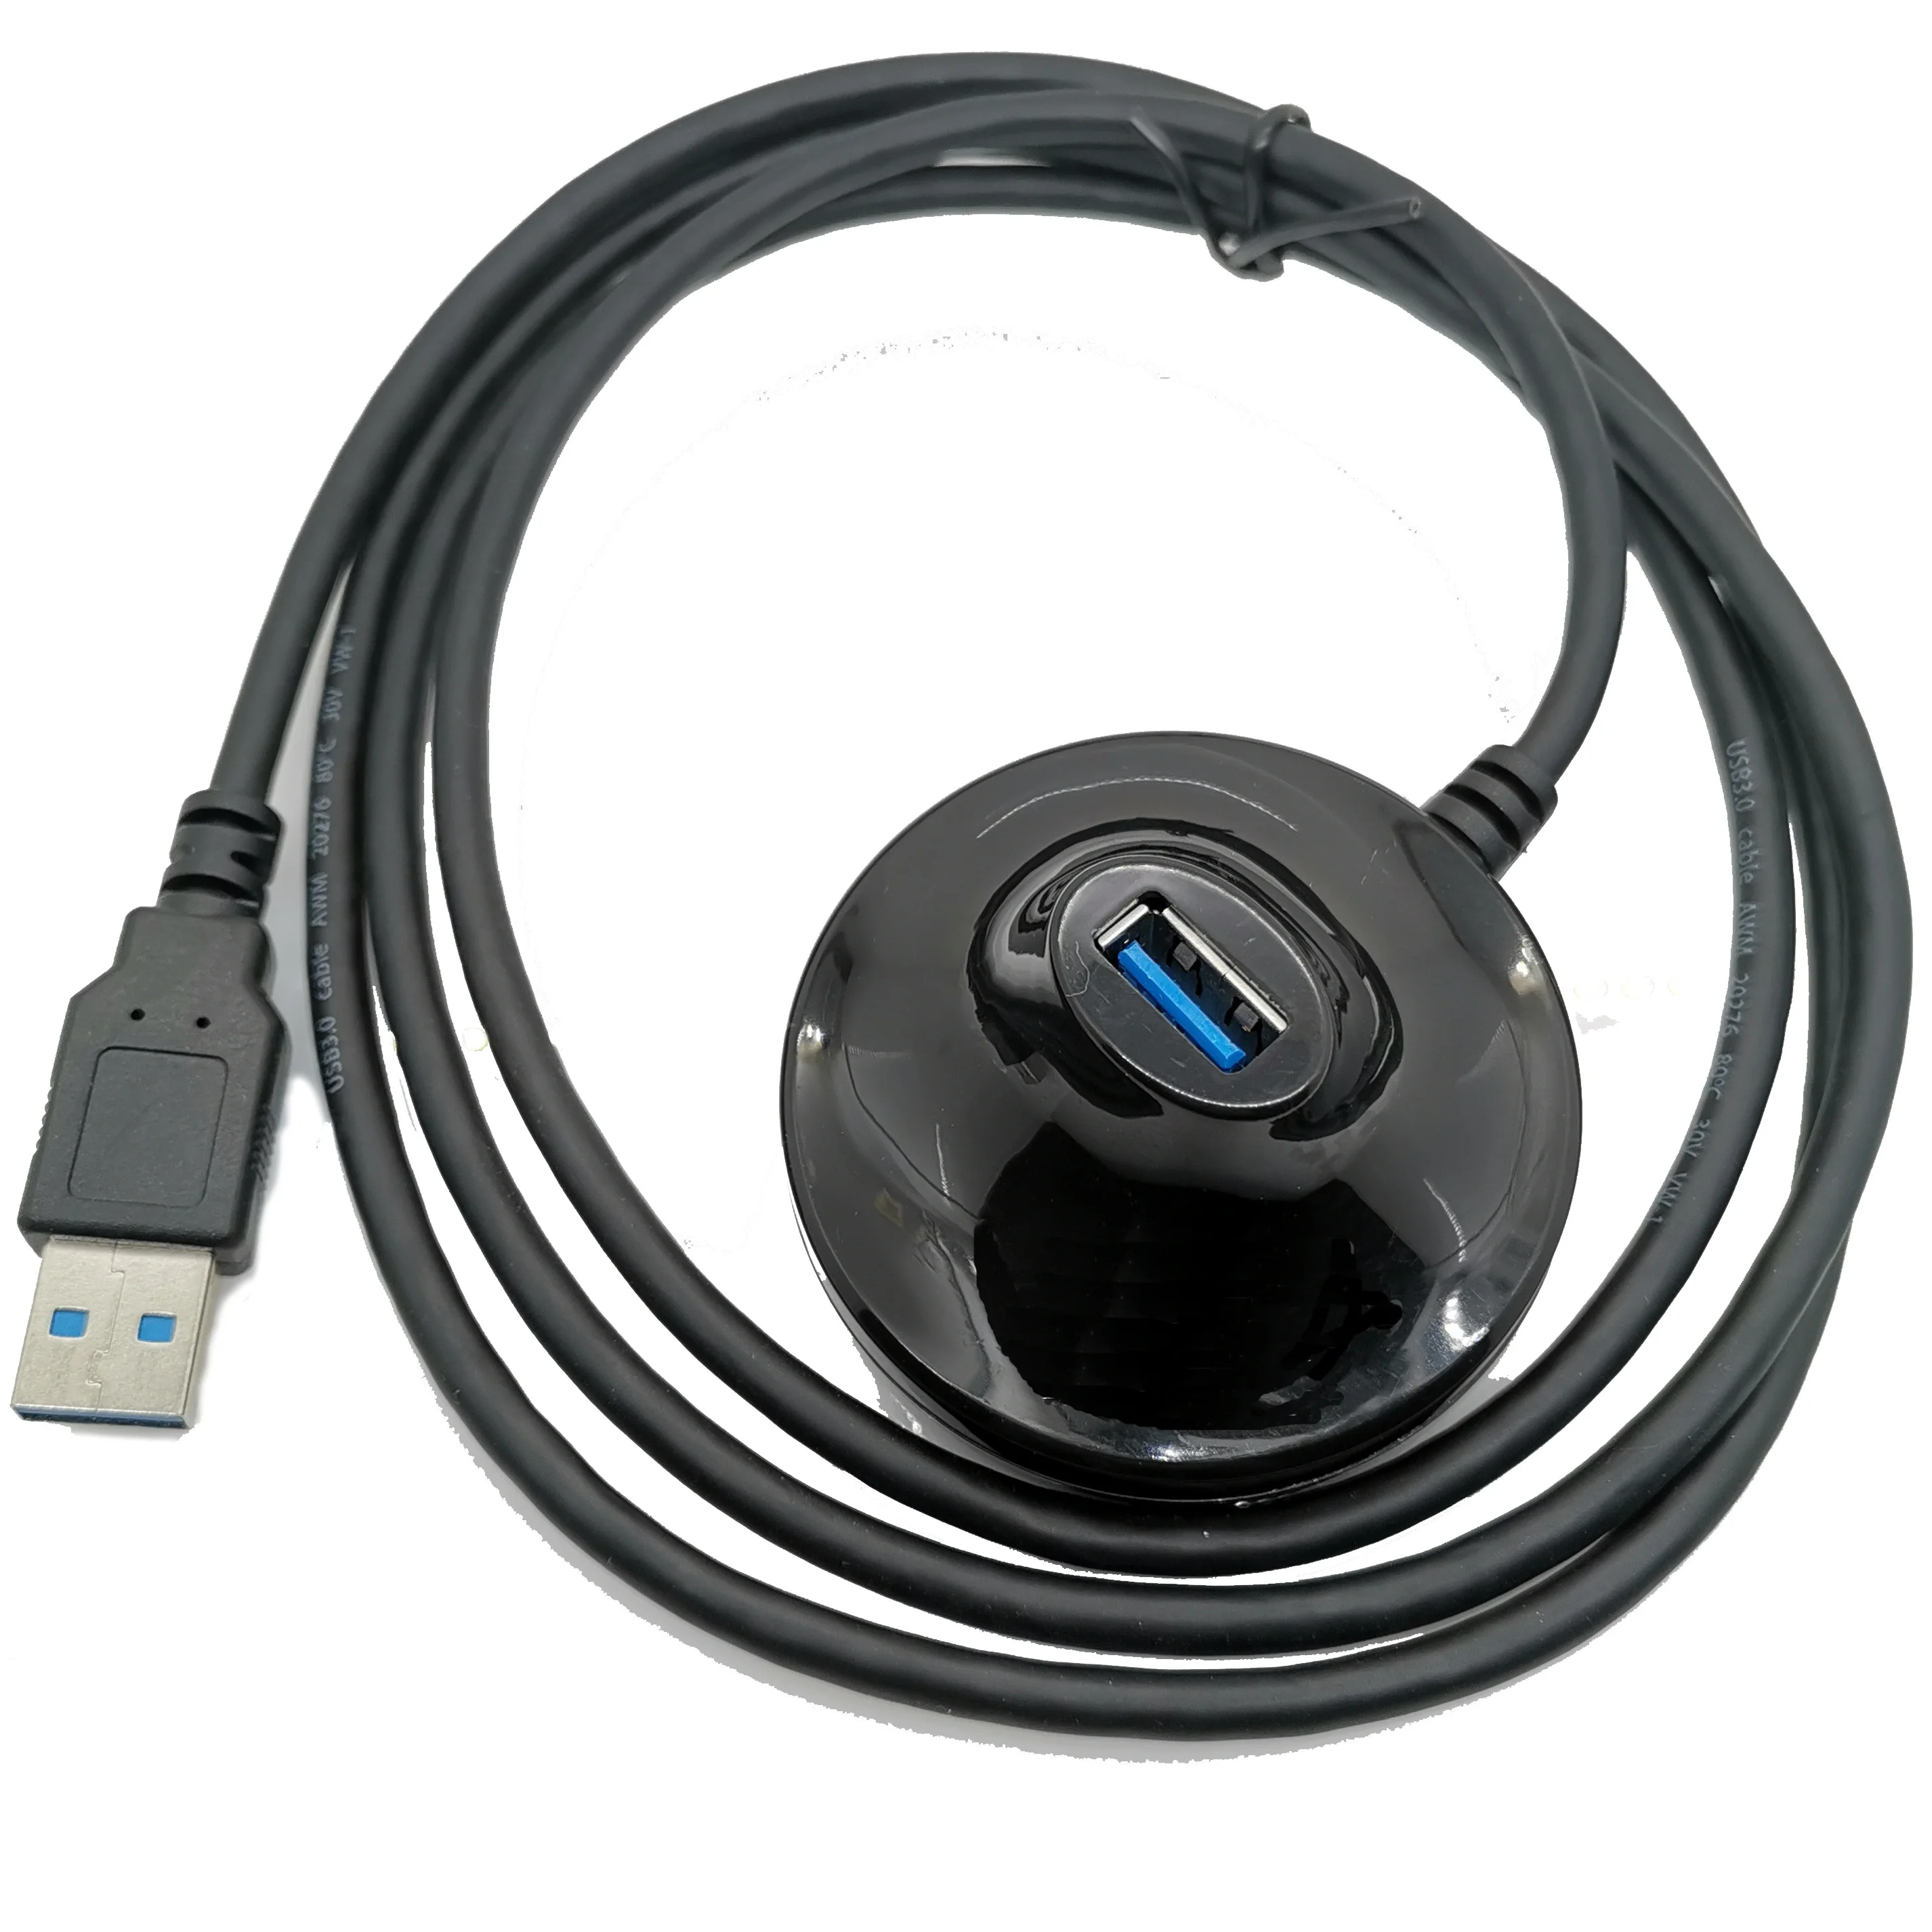 1,5 м Расширенная Базовая док-станция USB для мужчин и женщин беспроводной wifi адаптер удлинитель колыбели подставка стыковочный кабель Шнур USB2.0 USB3.0